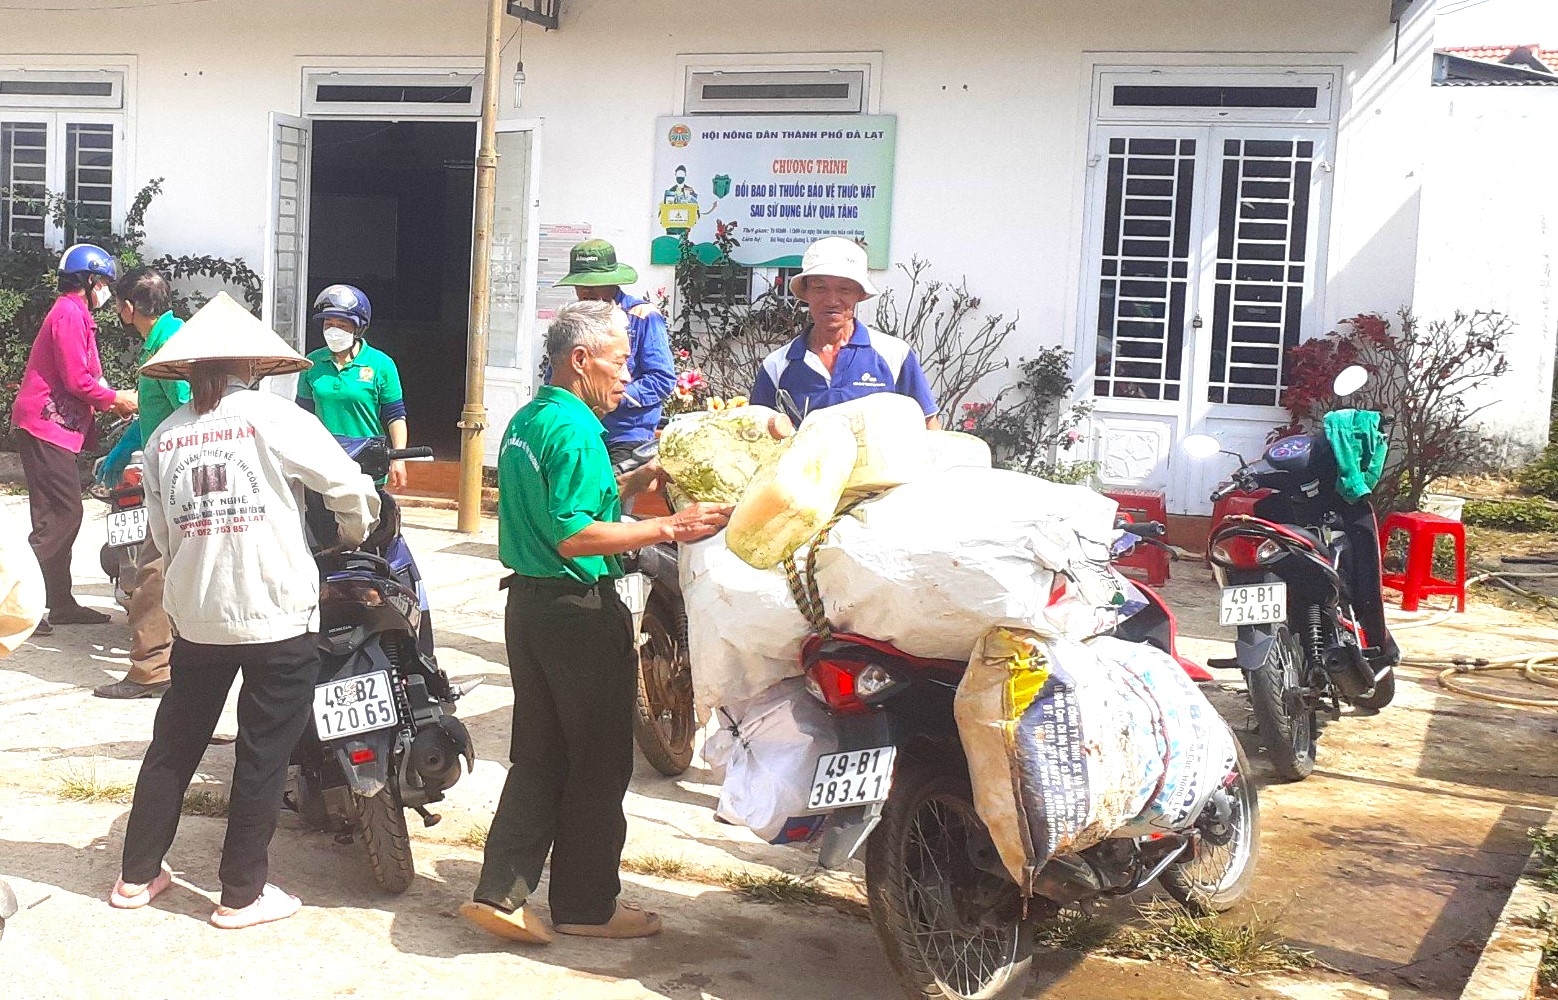 Thu gom trên 4,3 tấn bao bì hóa chất bảo vệ thực vật sau sử dụng thông qua chương trình đổi quà tặng tại thành phố Đà Lạt